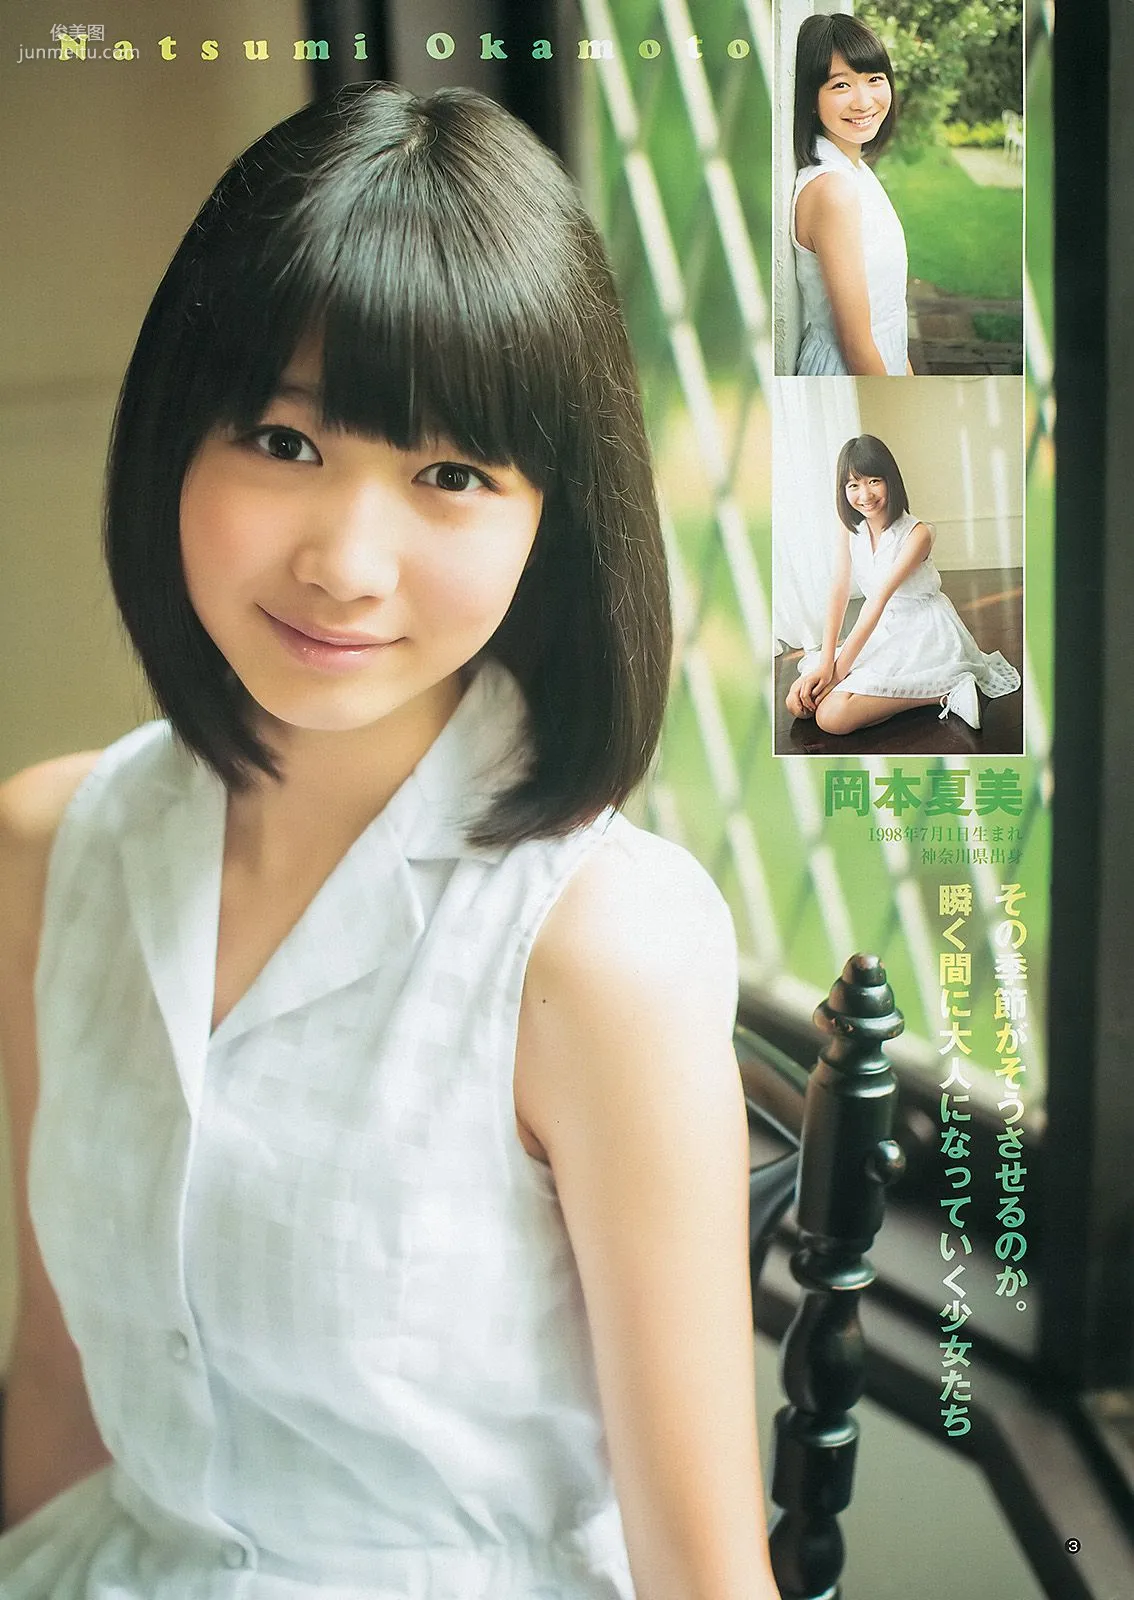 大川藍 夏菜 おはガールちゅ!ちゅ!ちゅ! [Weekly Young Jump] 2013年No.31 写真杂志15